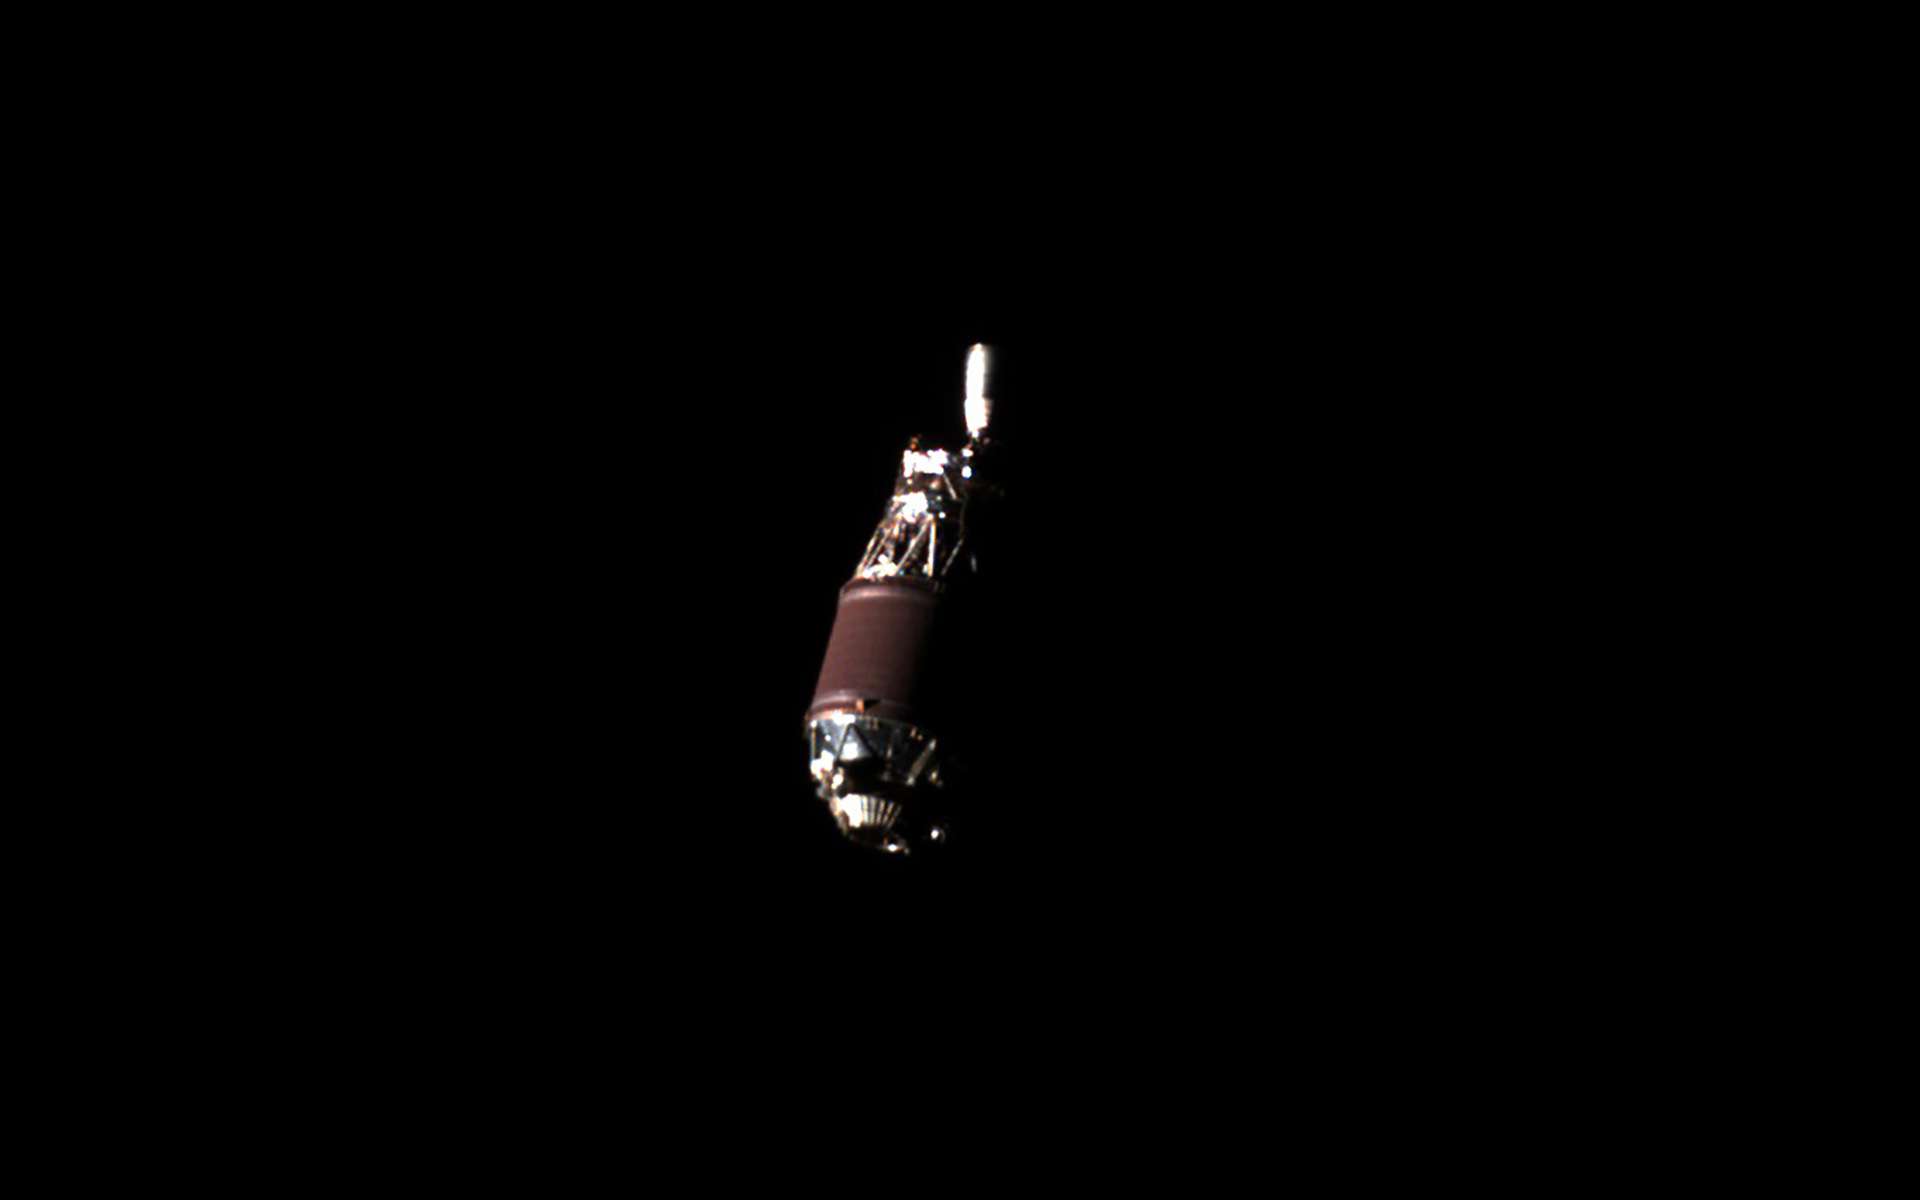 Une image inédite d'un débris spatial en orbite lors d'opérations du satellite Adras-J